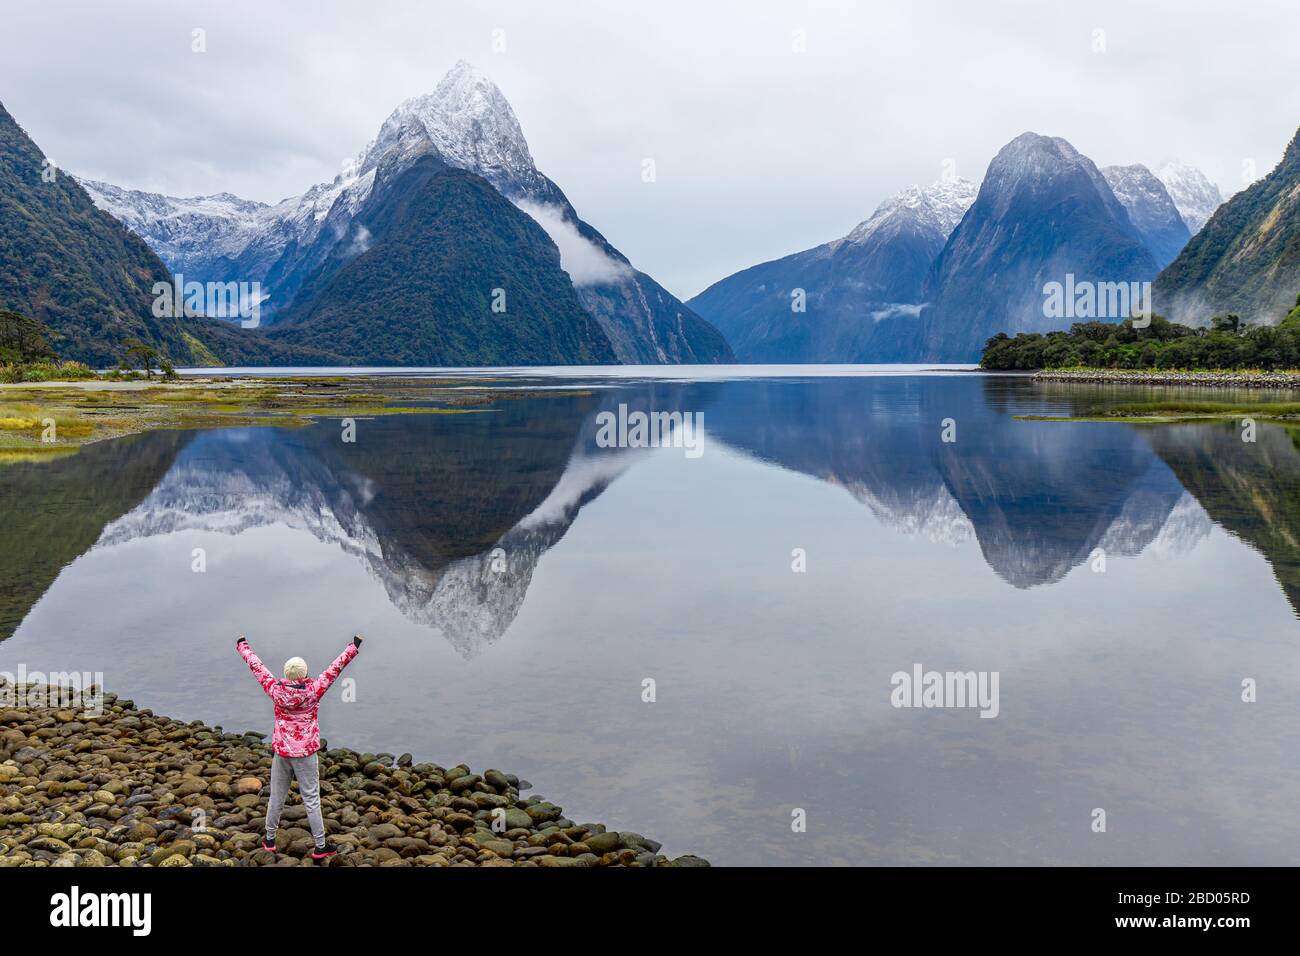 Jeune voyageur asiatique célébrant le succès à Milford Sound, parc national de Fiordland, île du Sud, Nouvelle-Zélande Banque D'Images